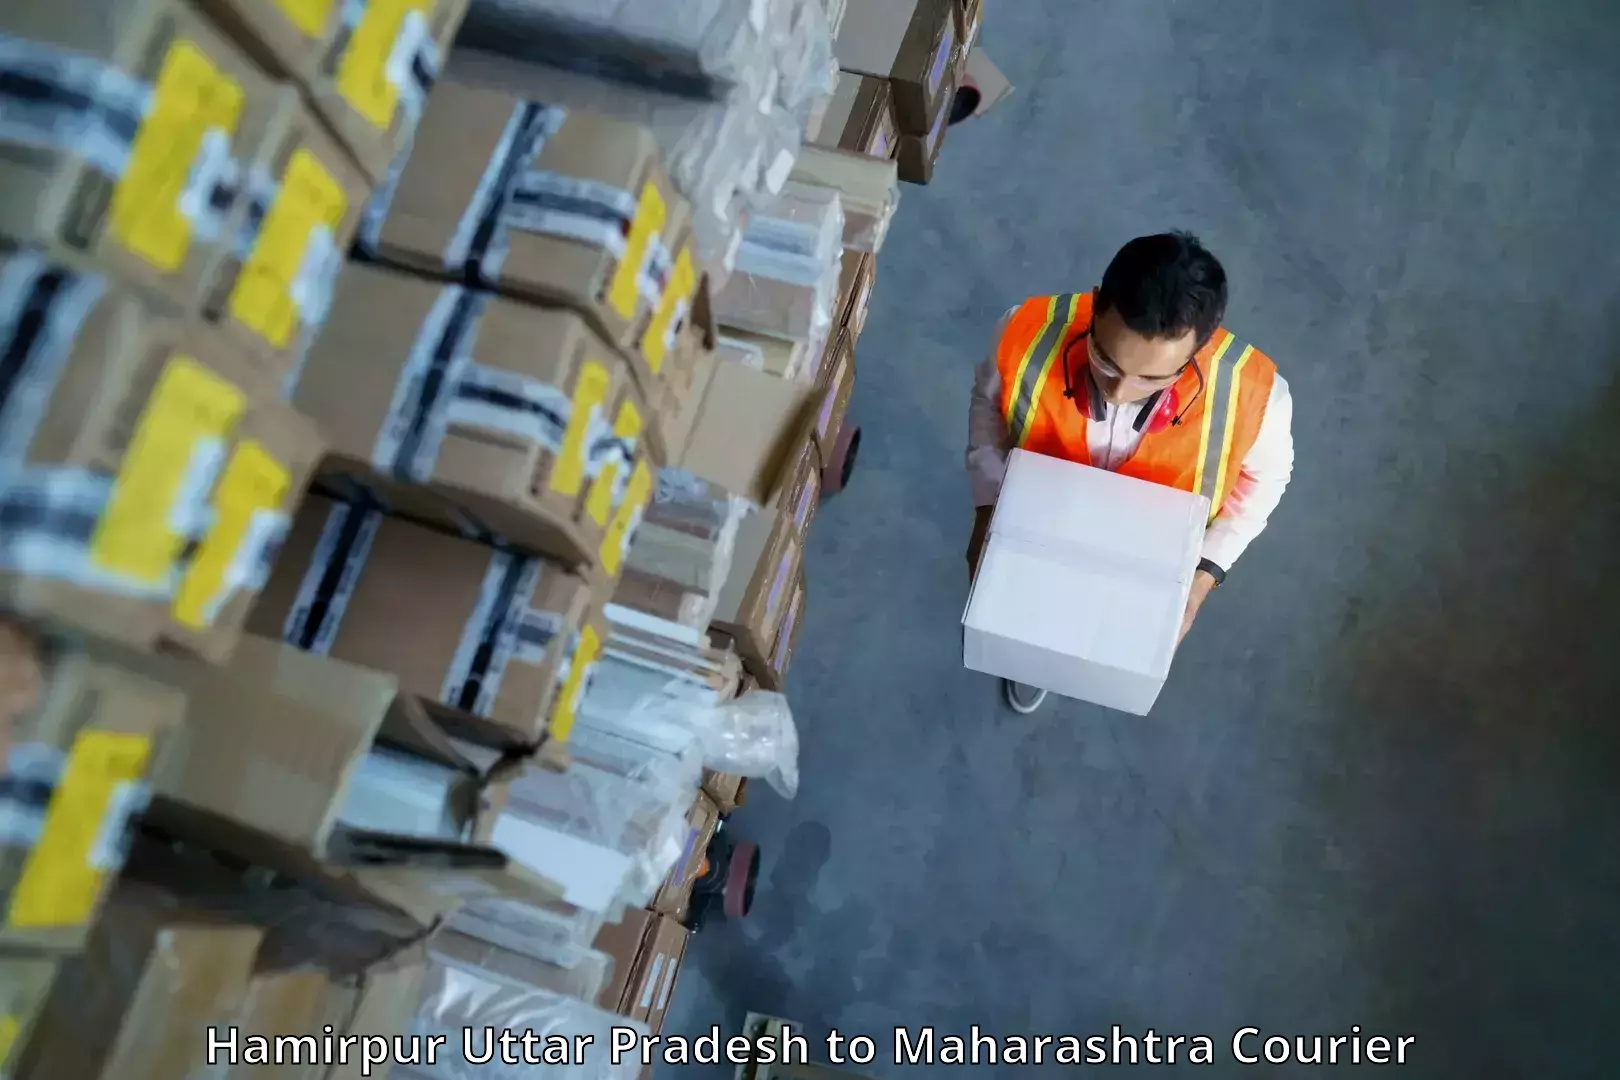 Business shipping needs Hamirpur Uttar Pradesh to Shahada